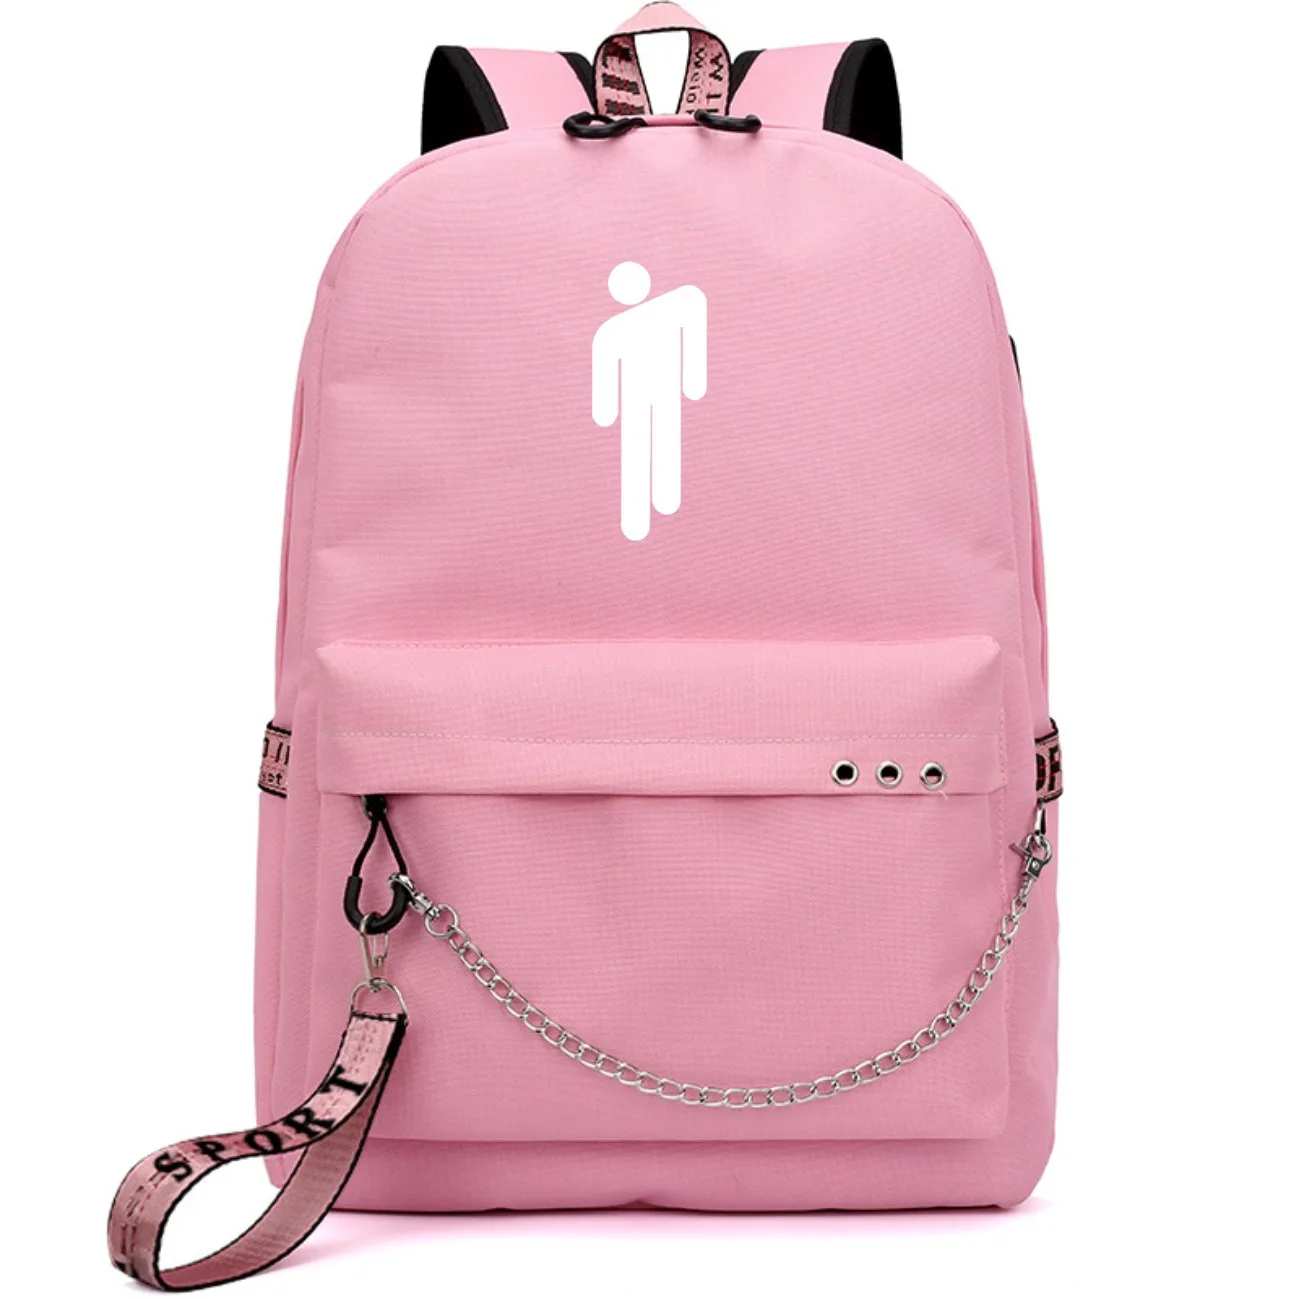 Горячая Billie Eilish Рюкзак Школьные сумки kpop Mochila дорожные сумки ноутбук рюкзак с цепочкой наушники с USB портом